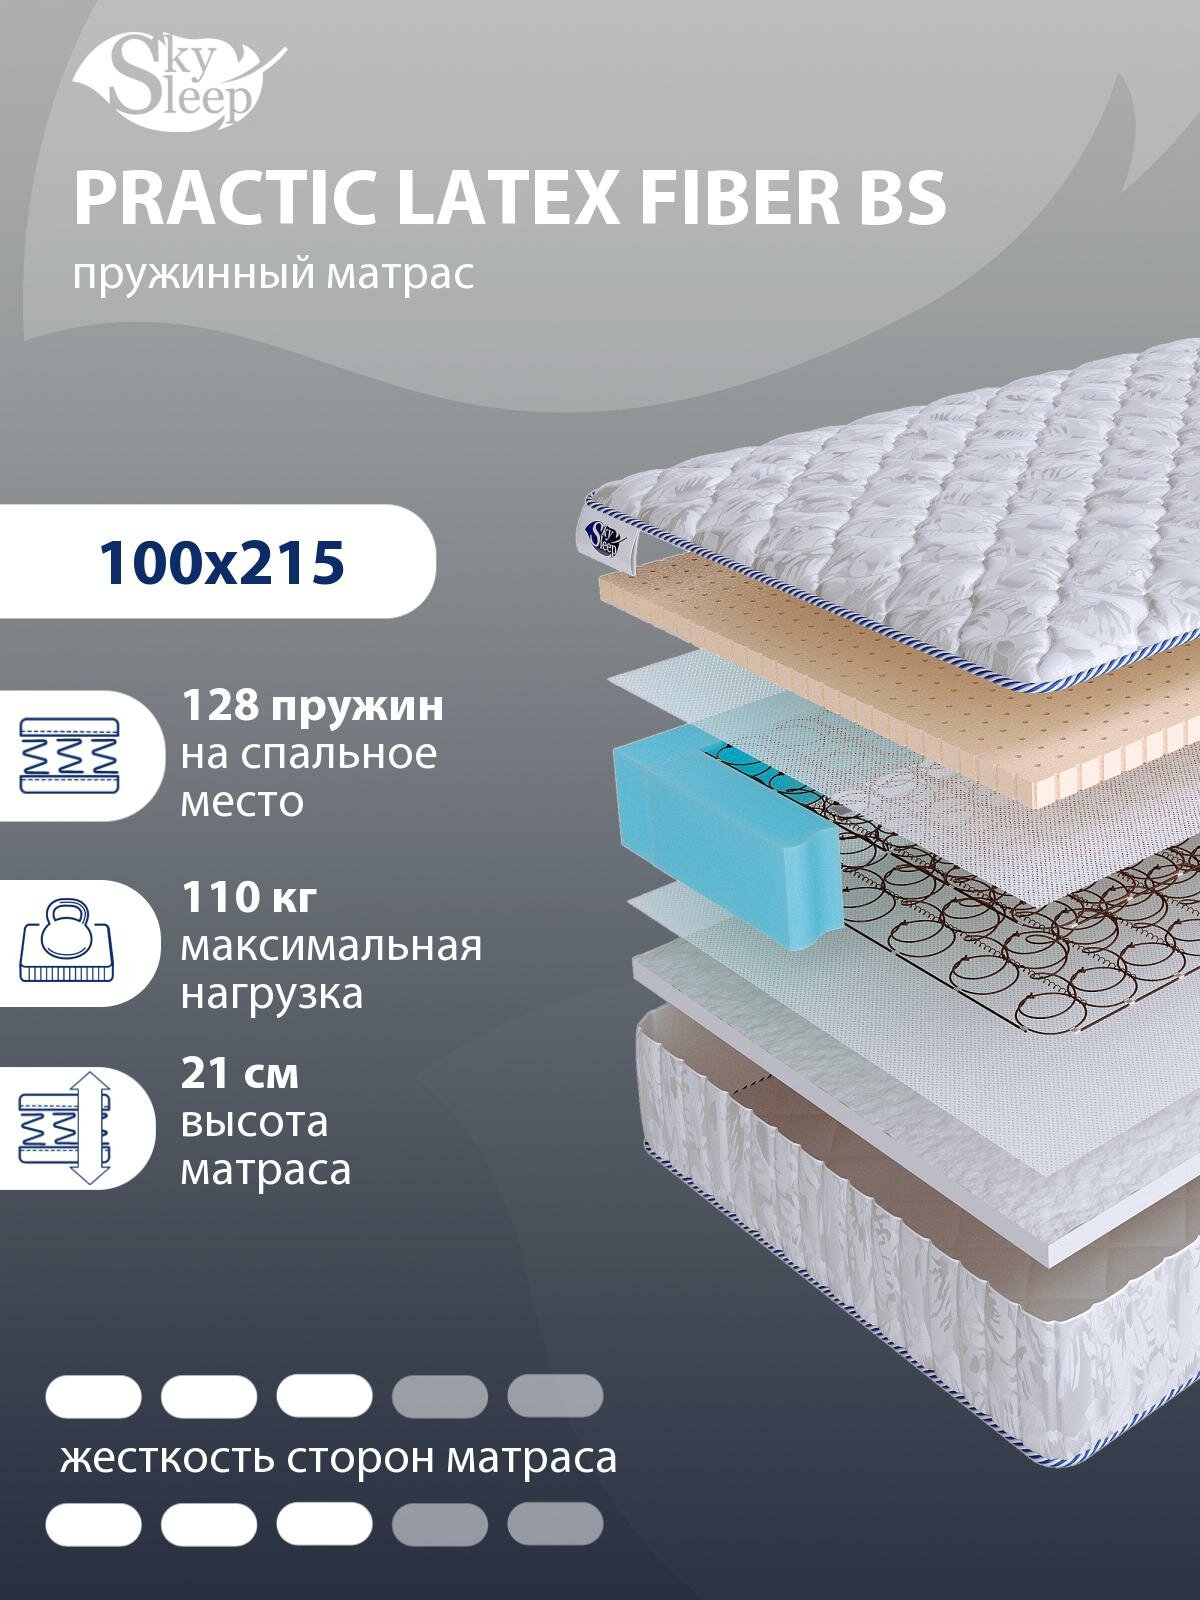 Ортопедический матрас SkySleep PRACTIC LATEX FIBER BS с зависимым пружинным блоком для кровати тахты 100x215